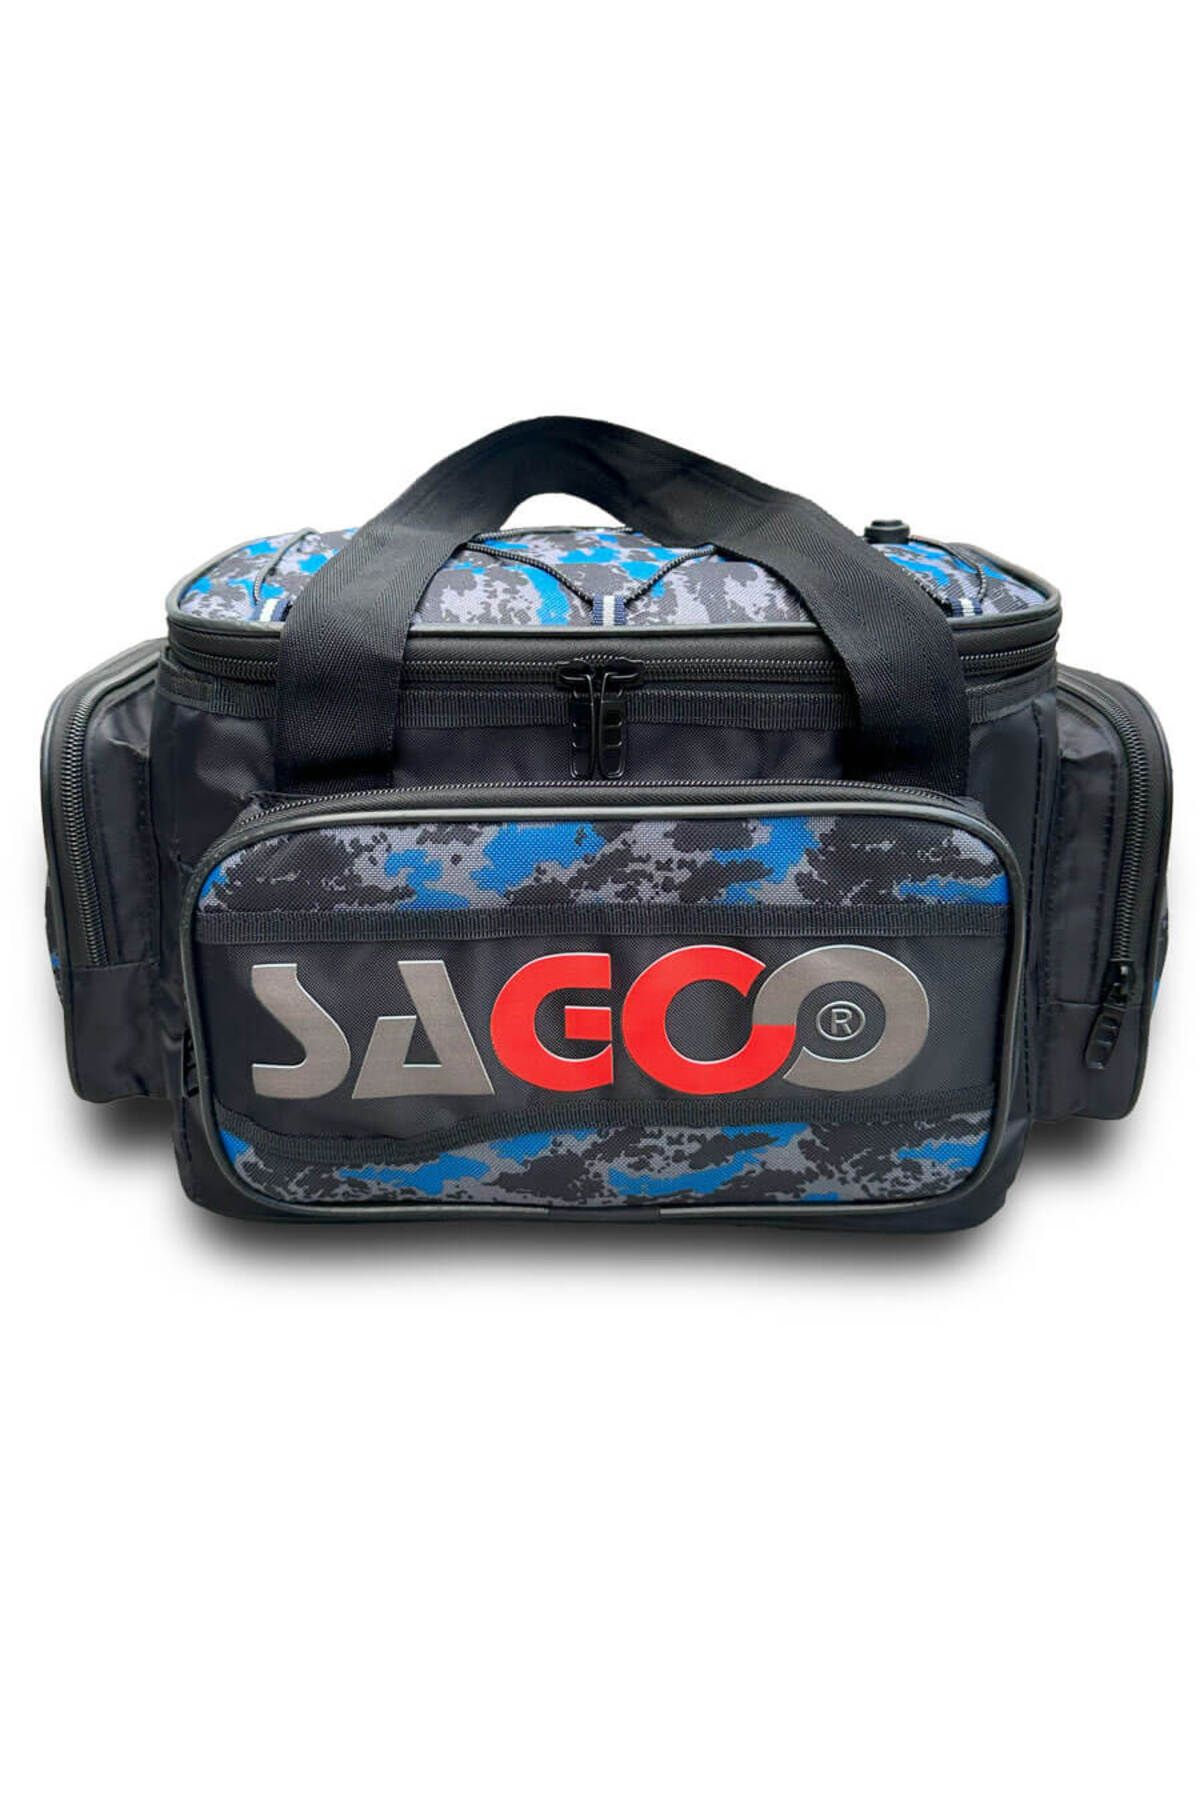 Sagoo Tackle Bag Blue Camo Balıkçı Malzeme Çantası